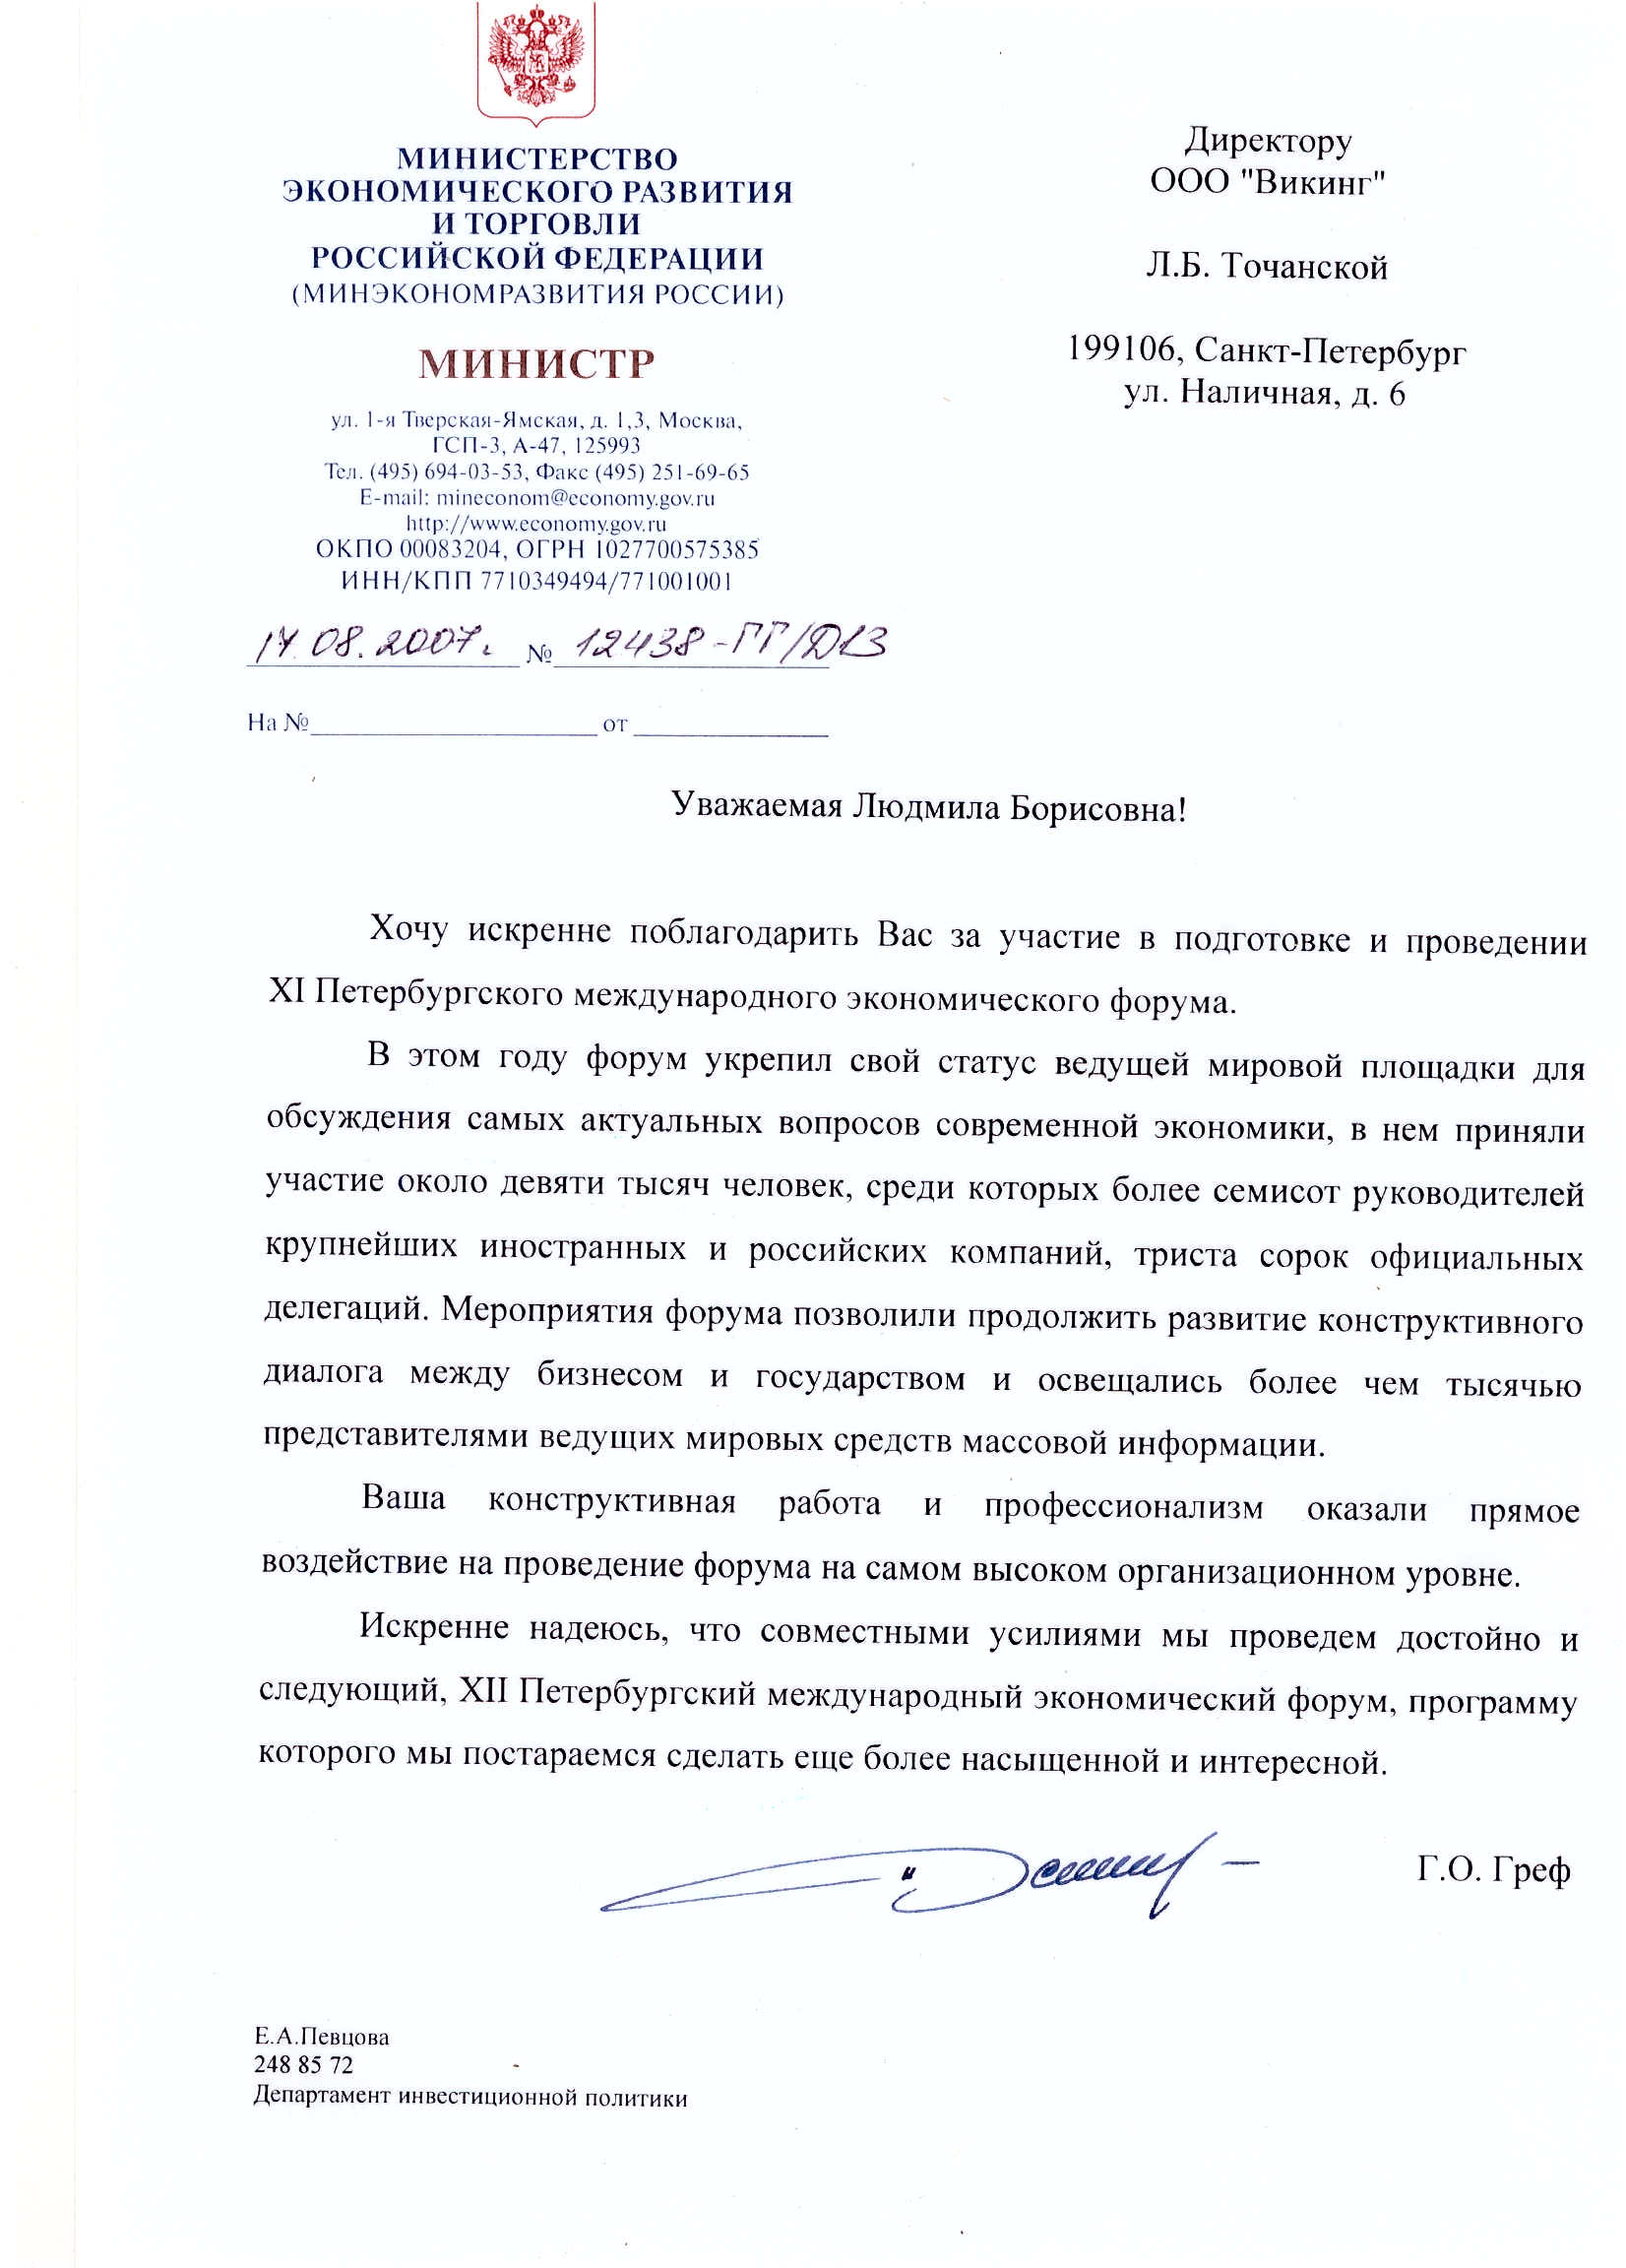 Благодарность и отзыв от министра экономического развития и торговли Российской Федерации. 2007 год